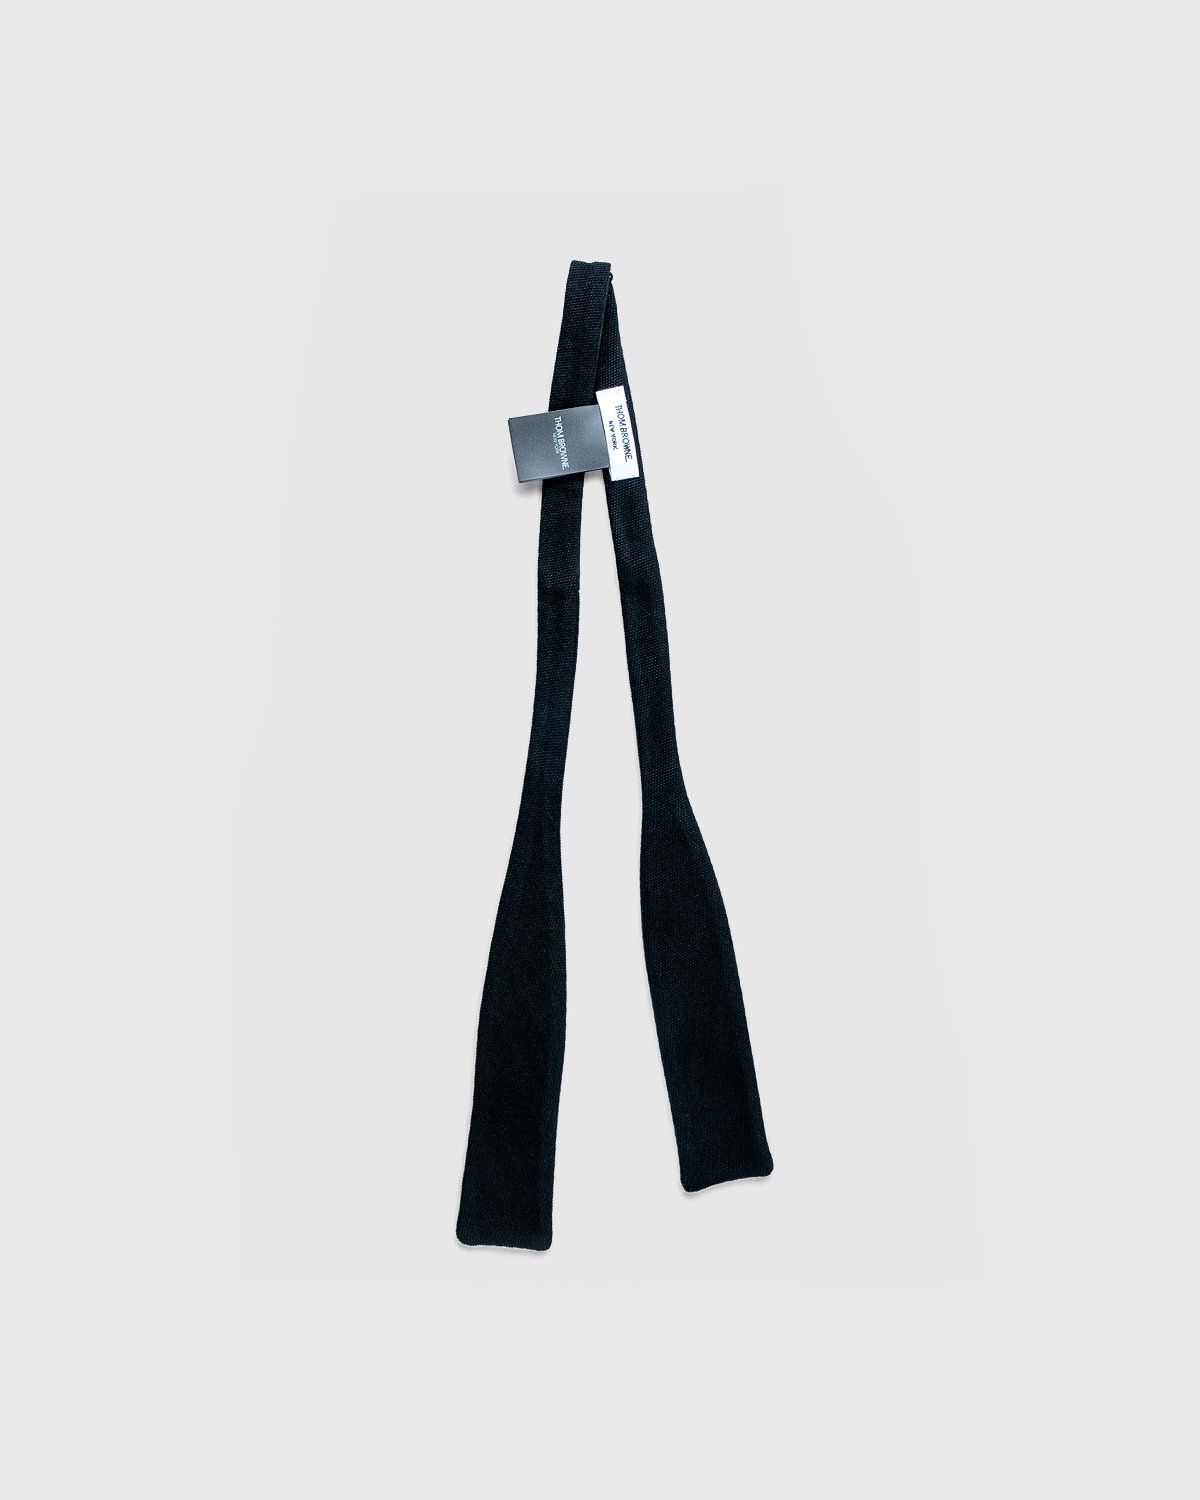 Thom Browne x Highsnobiety – Classic Bow Tie Black - Image 2